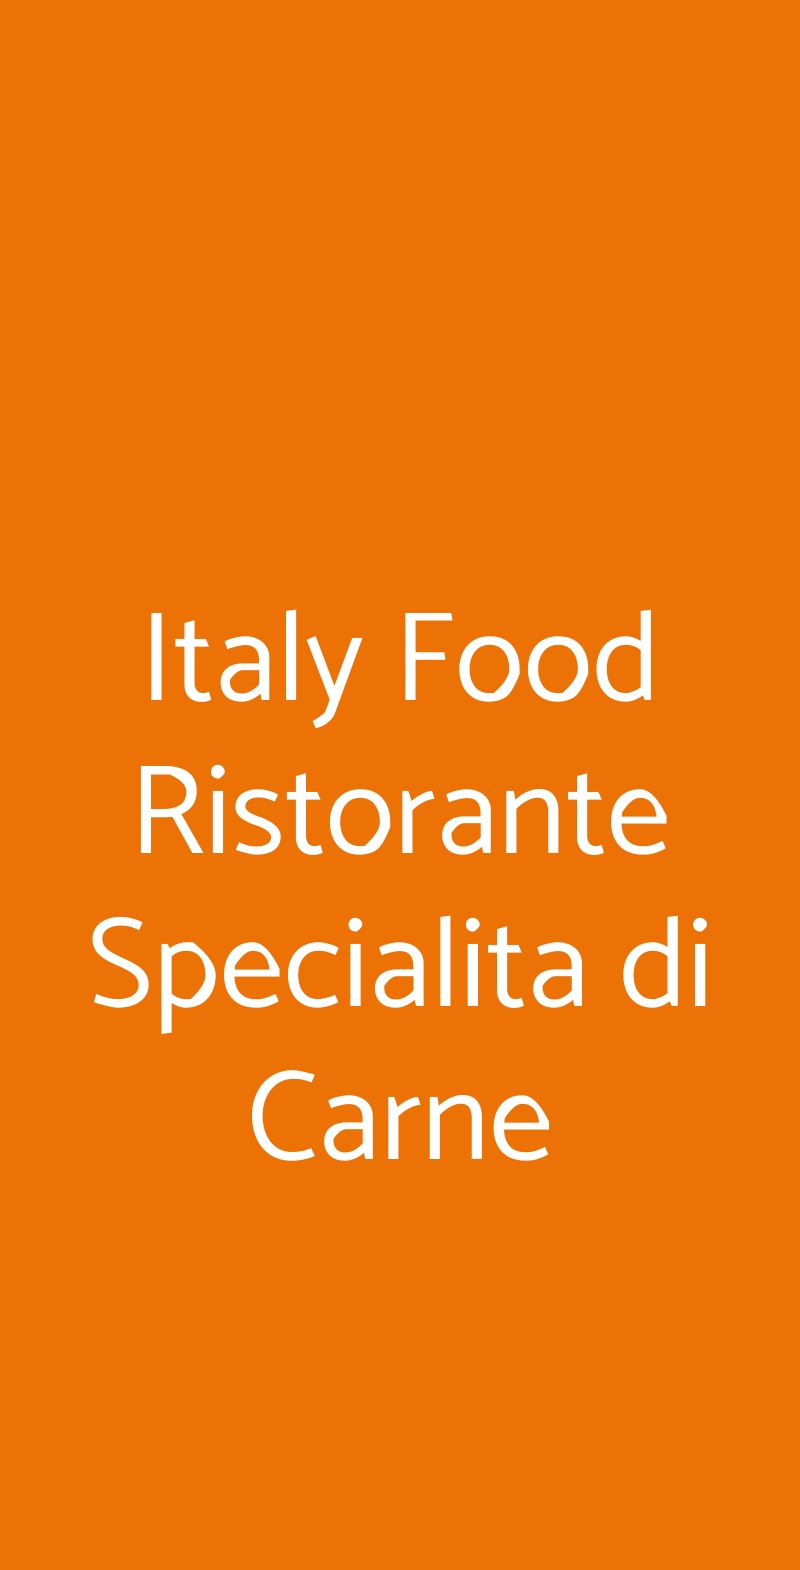 Italy Food Ristorante Specialita di Carne Roma menù 1 pagina